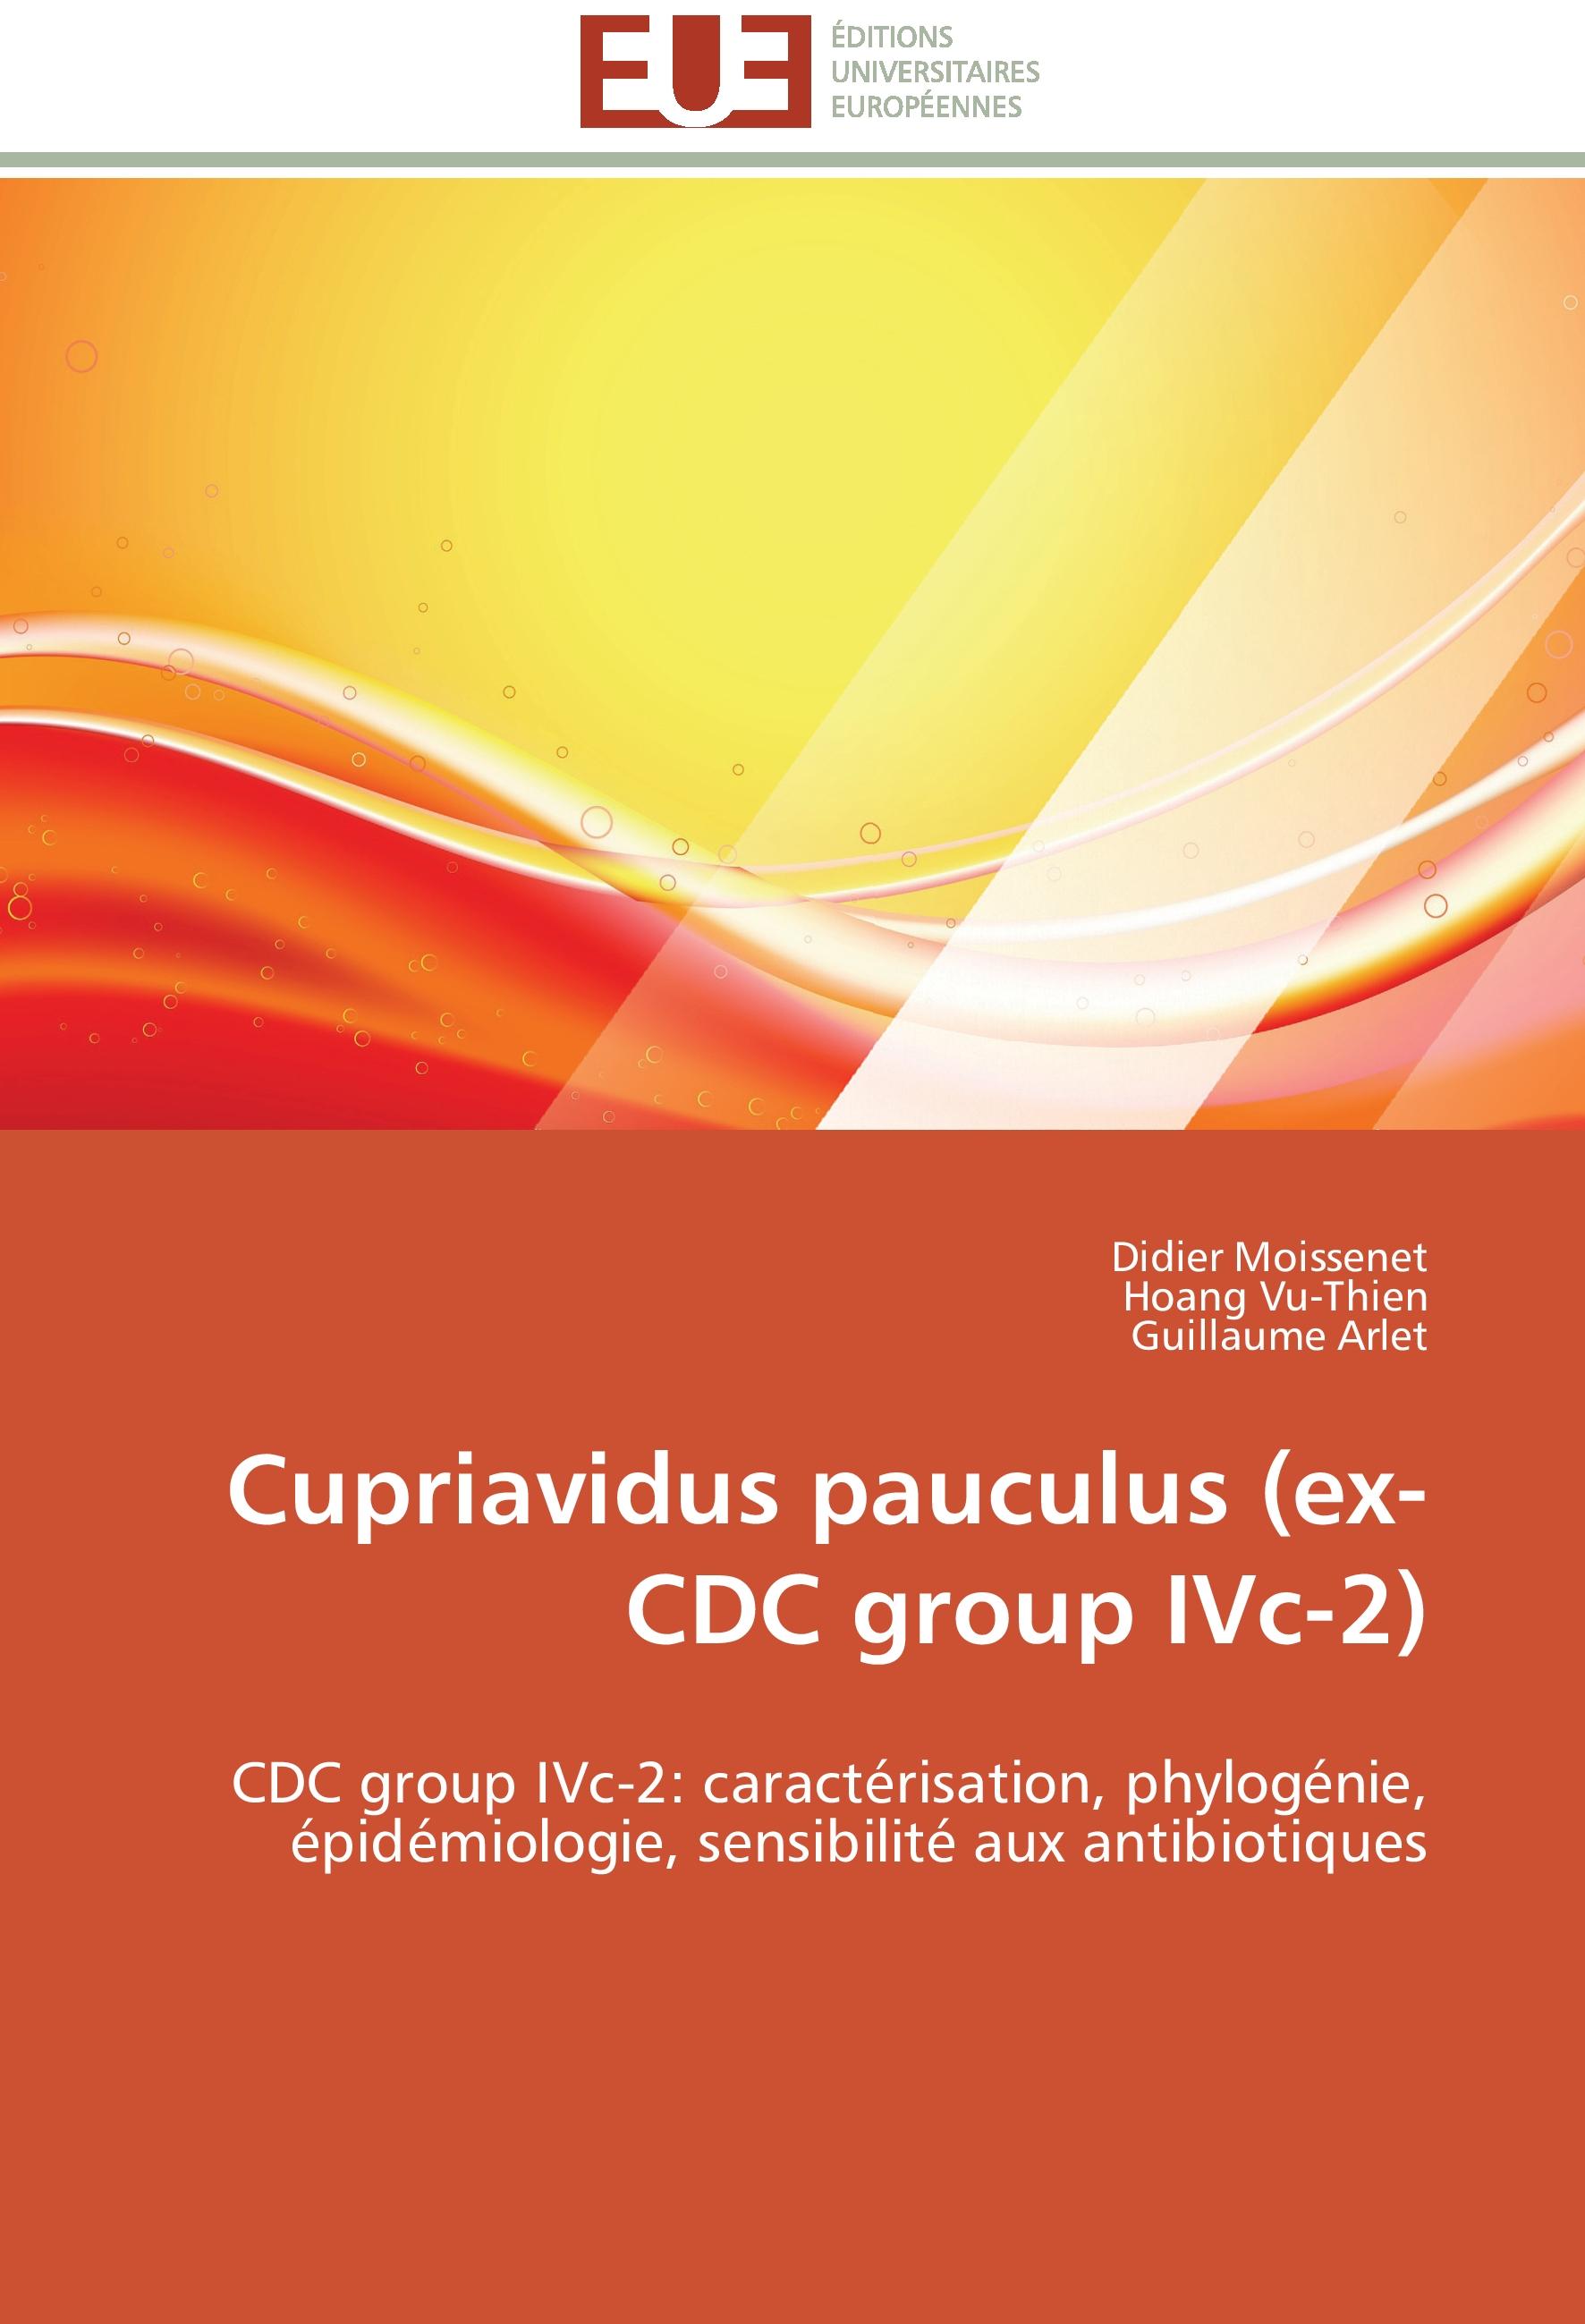 Cupriavidus pauculus (ex-CDC group IVc-2) - Didier Moissenet|Hoang Vu-Thien|Guillaume Arlet